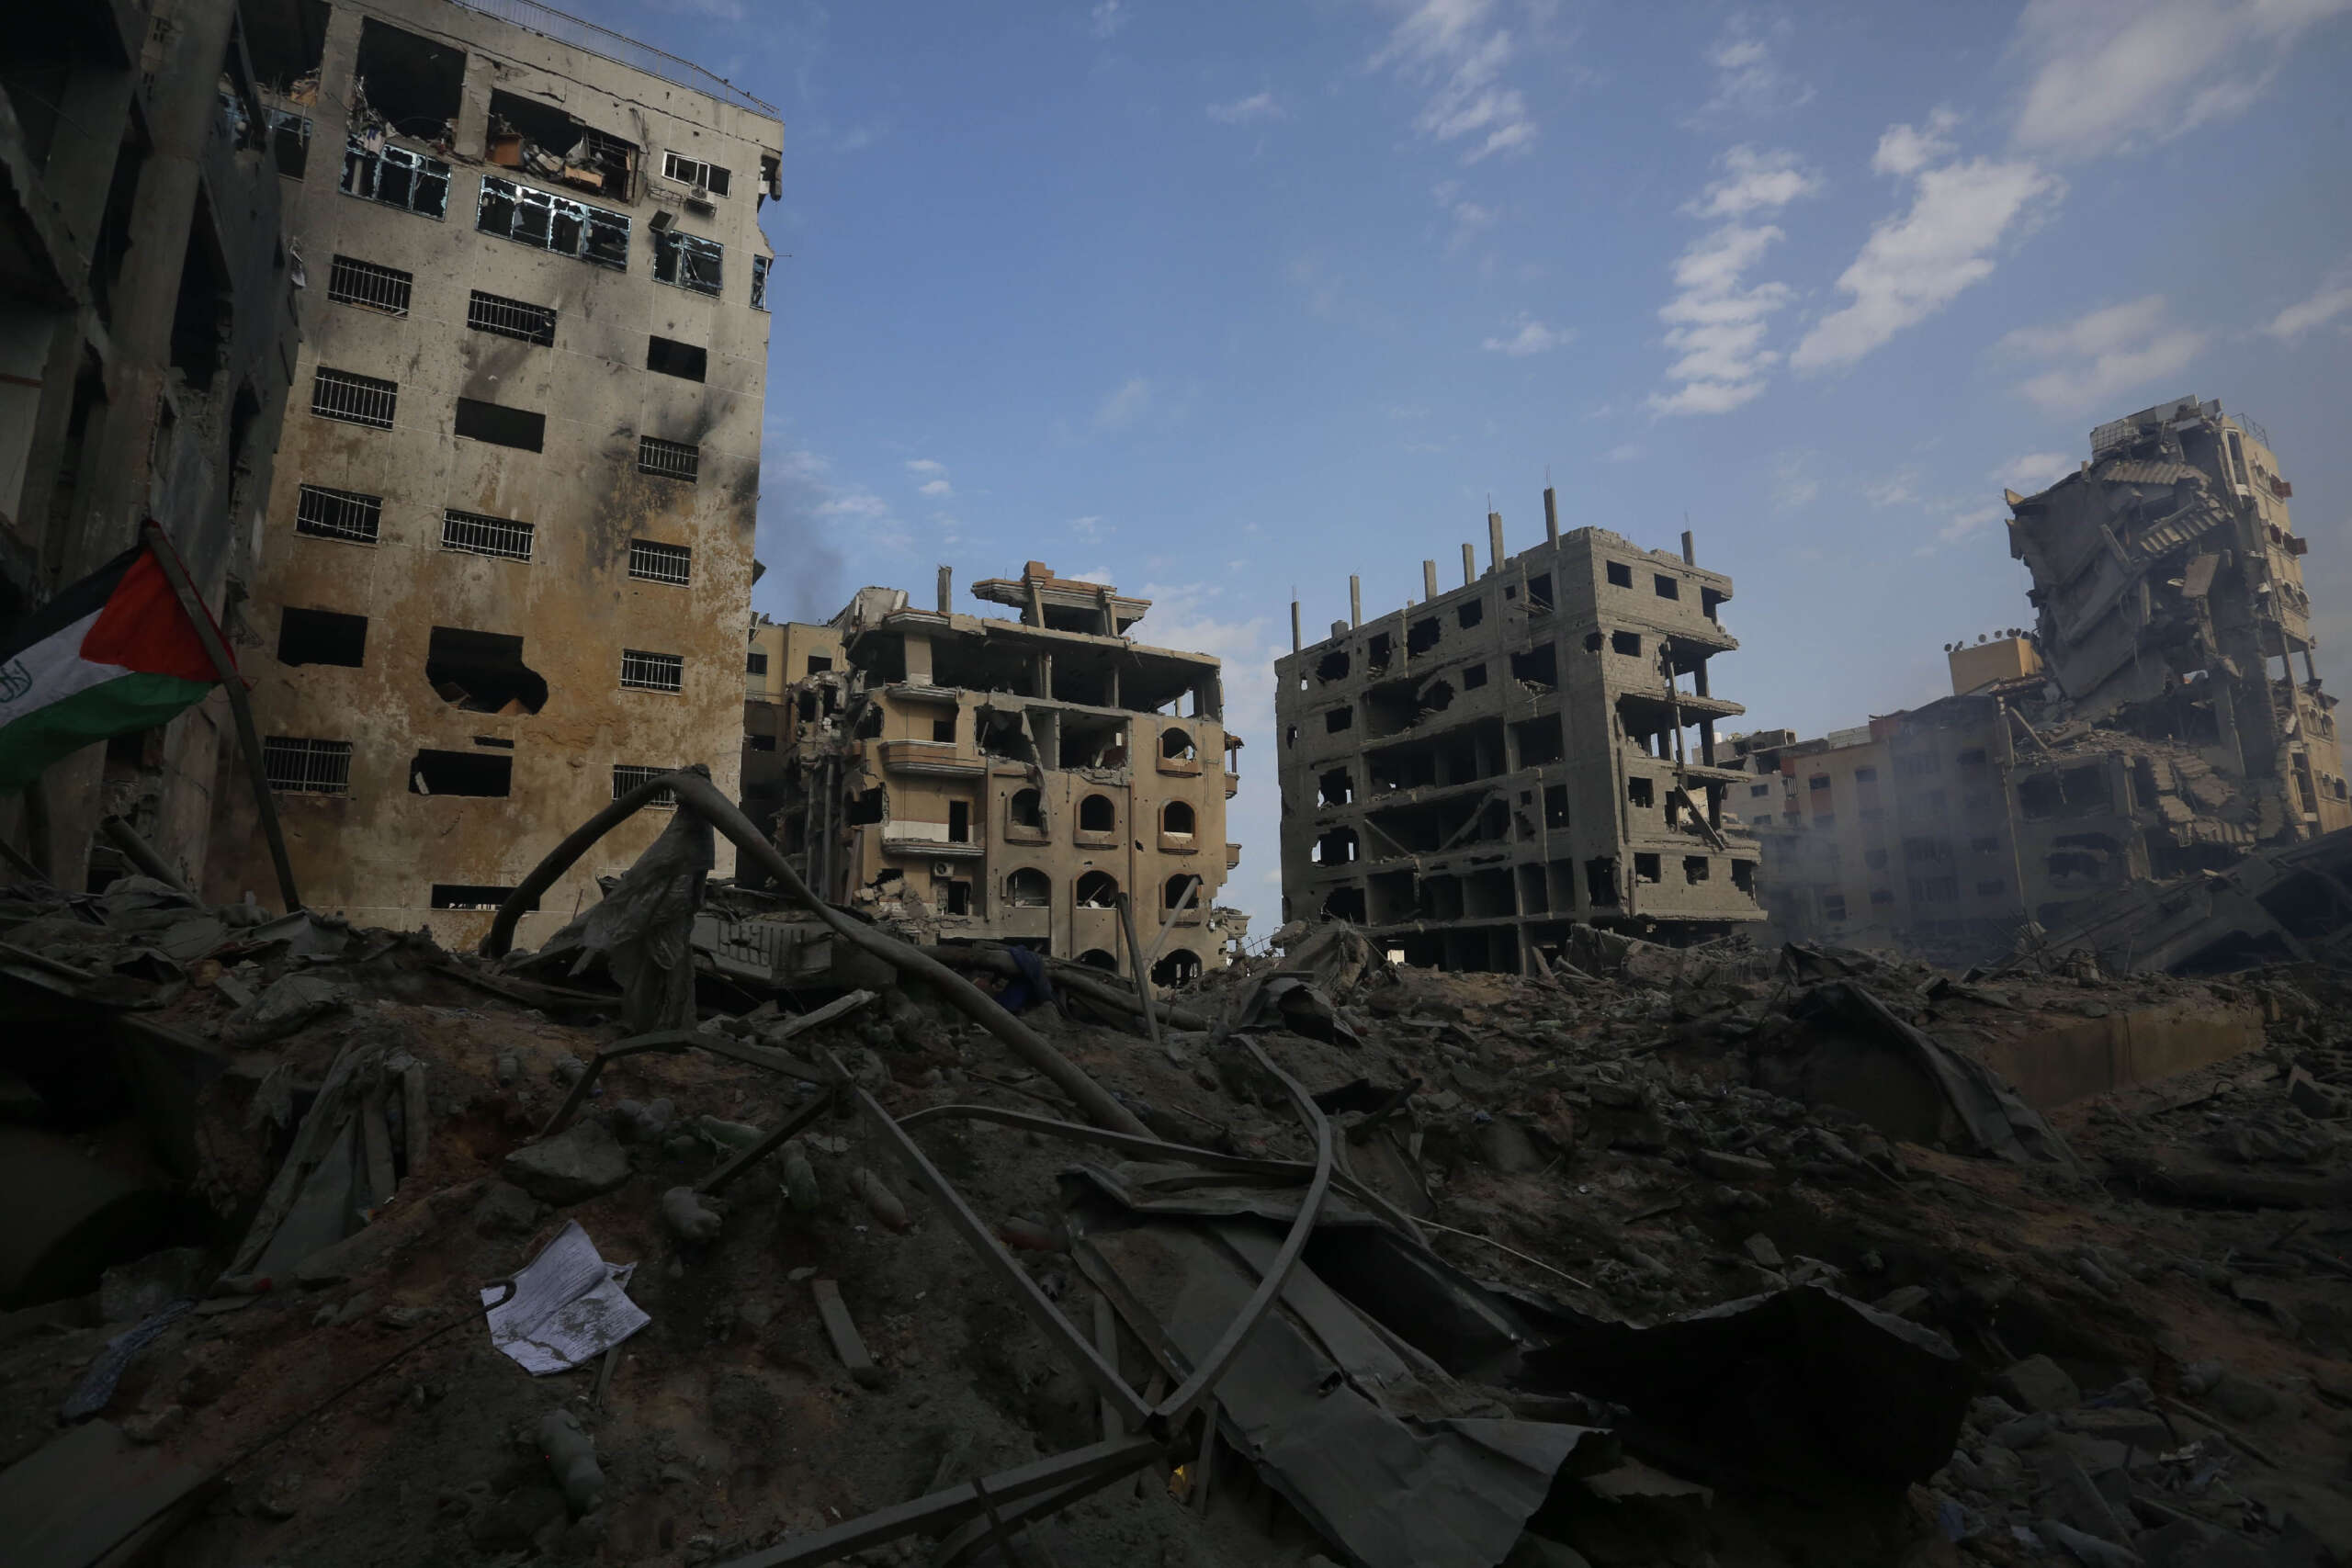 Un responsable de Tsahal admet que l’objectif d’Israël en bombardant Gaza est d’infliger de graves dégâts